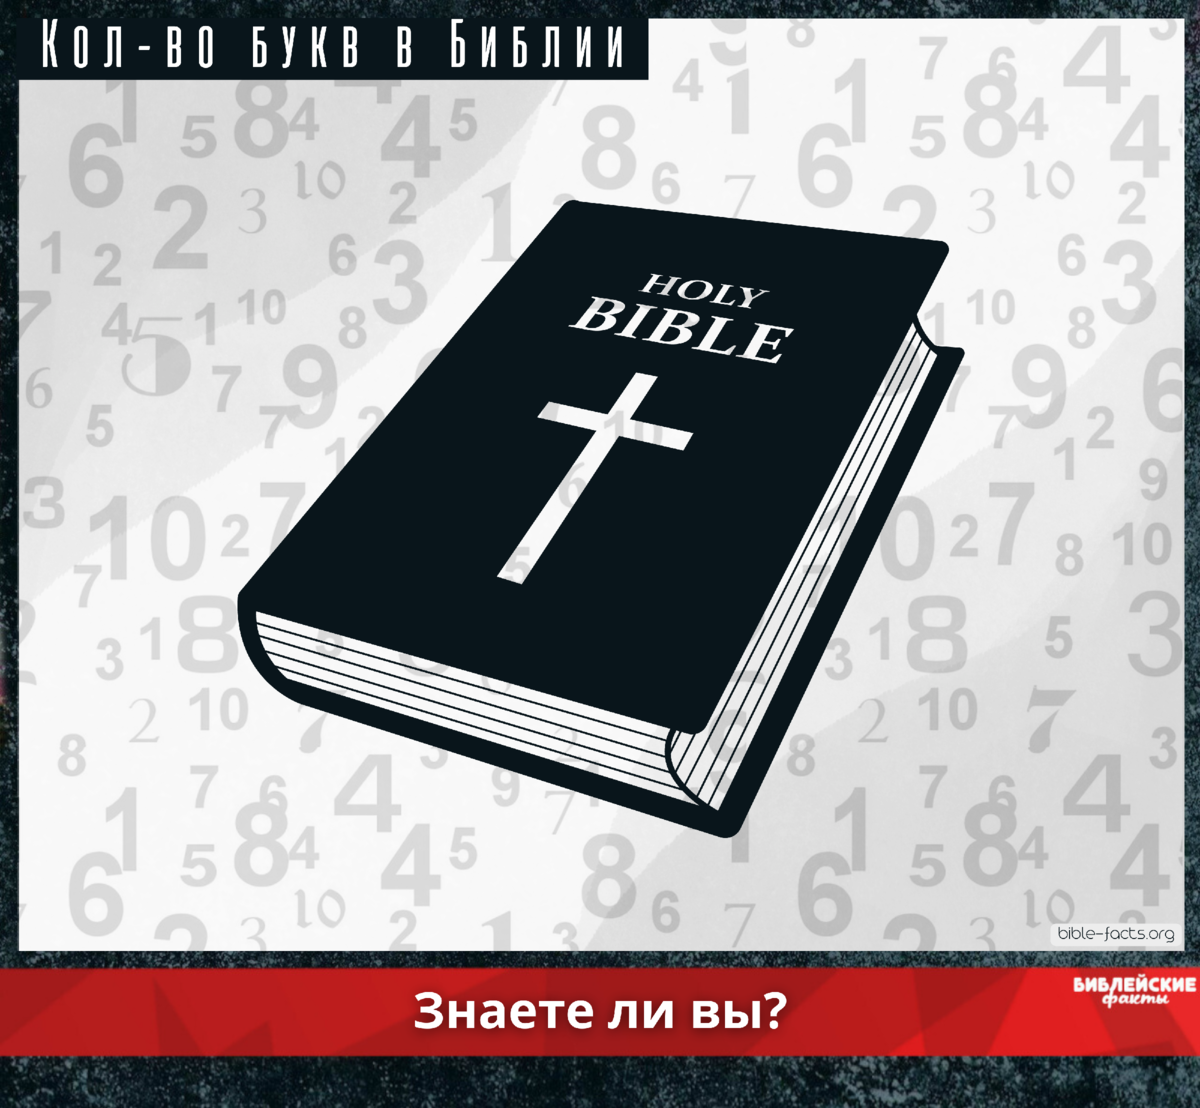 Библия 77 книг. Буквы в Библии. Факты о Библии. Библия буква т. Библейские факты.